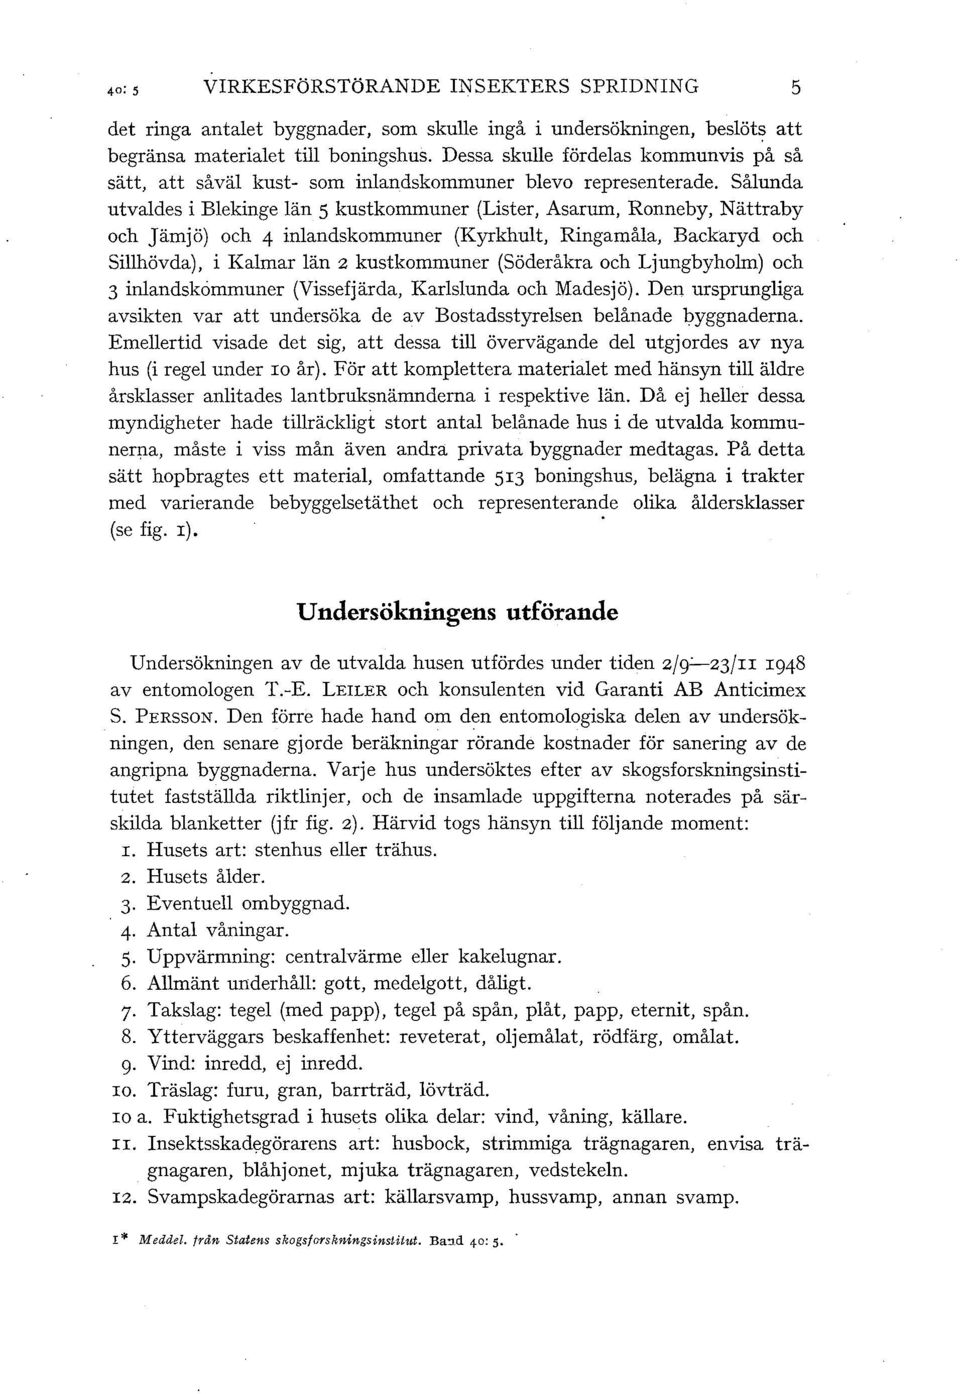 Såunda utvades i Bekinge än 5 kustkommuner (Lister, Asarum, Ronneby, Nättraby och Jämjö) och 4 inandskommuner (Kyrkhut, Ringamåa, Backaryd och Sihövda), i Kamar än 2 kustkommuner (Söderåkra och